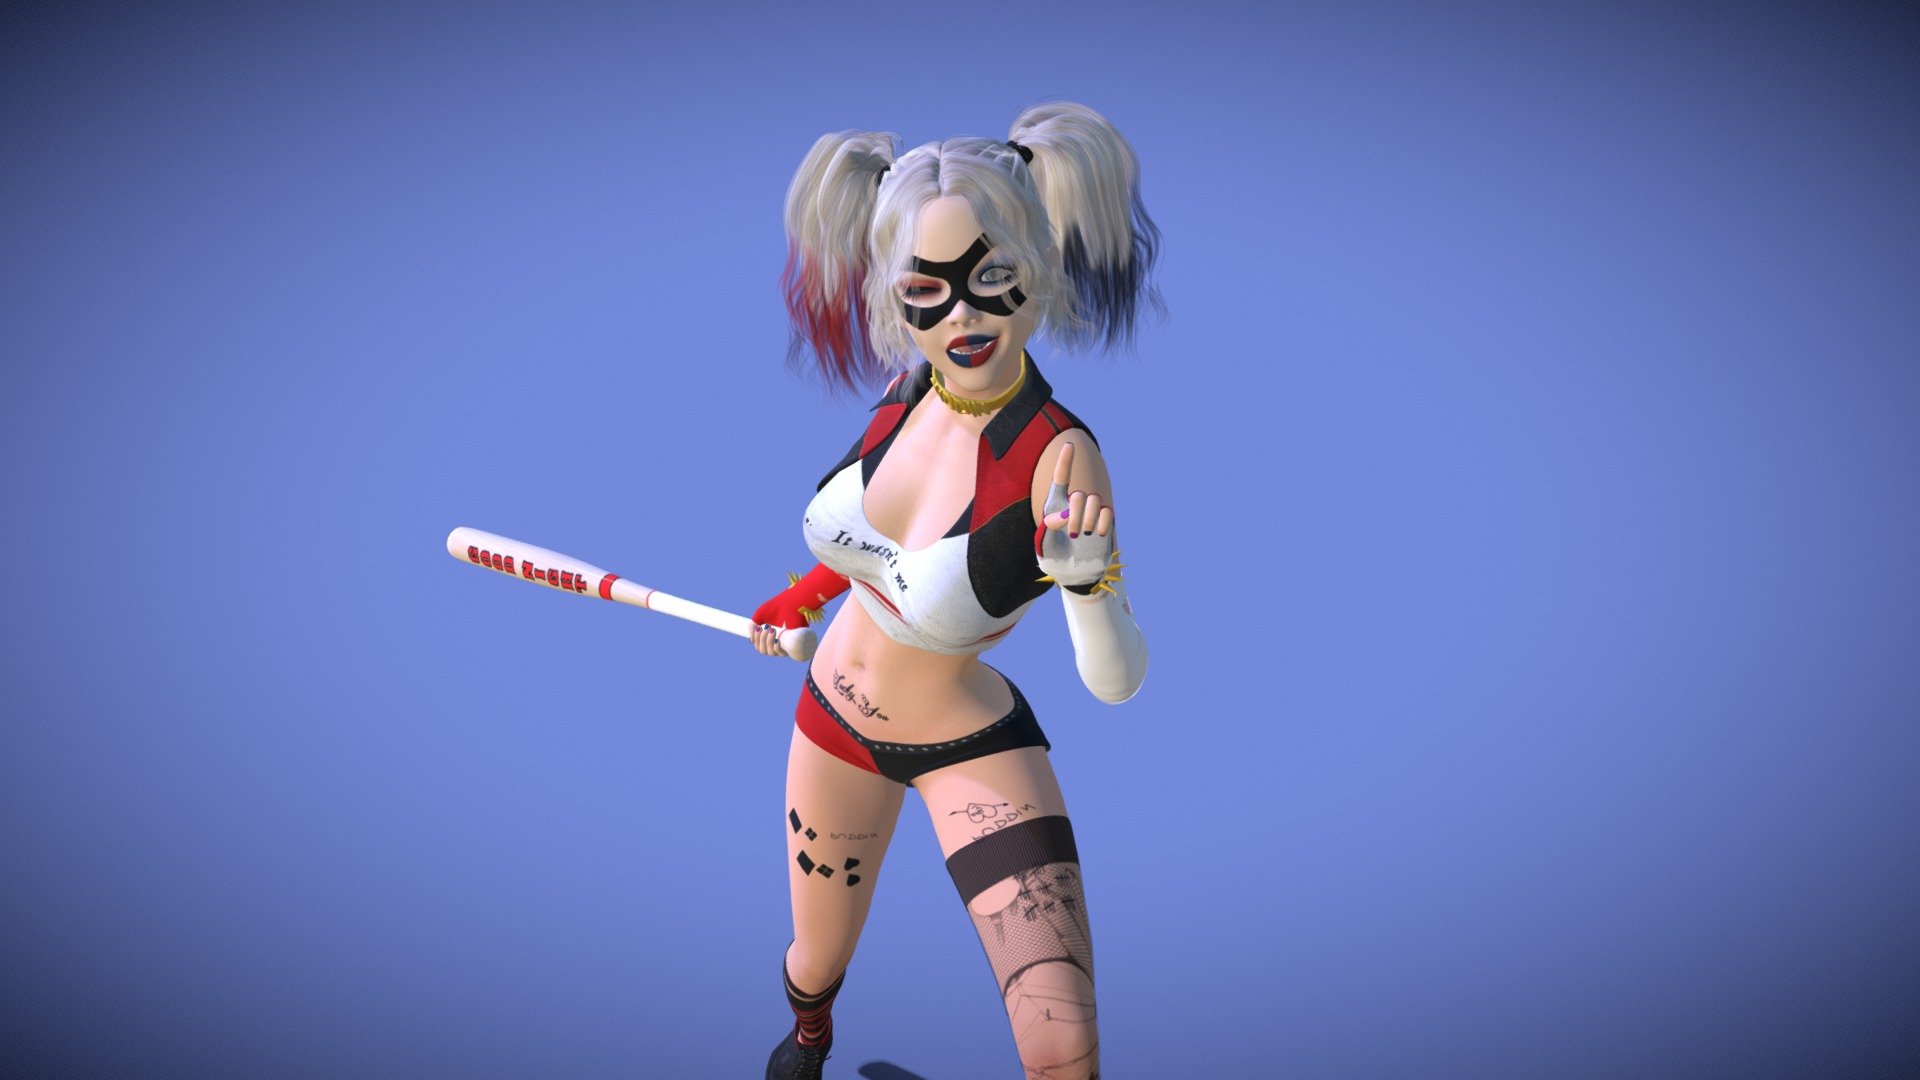 Harley Quinn Dark Charm
custom character - Harley Quinn Dark Charm - 3D model by Darkkova (@Darkinfokova) 3d model